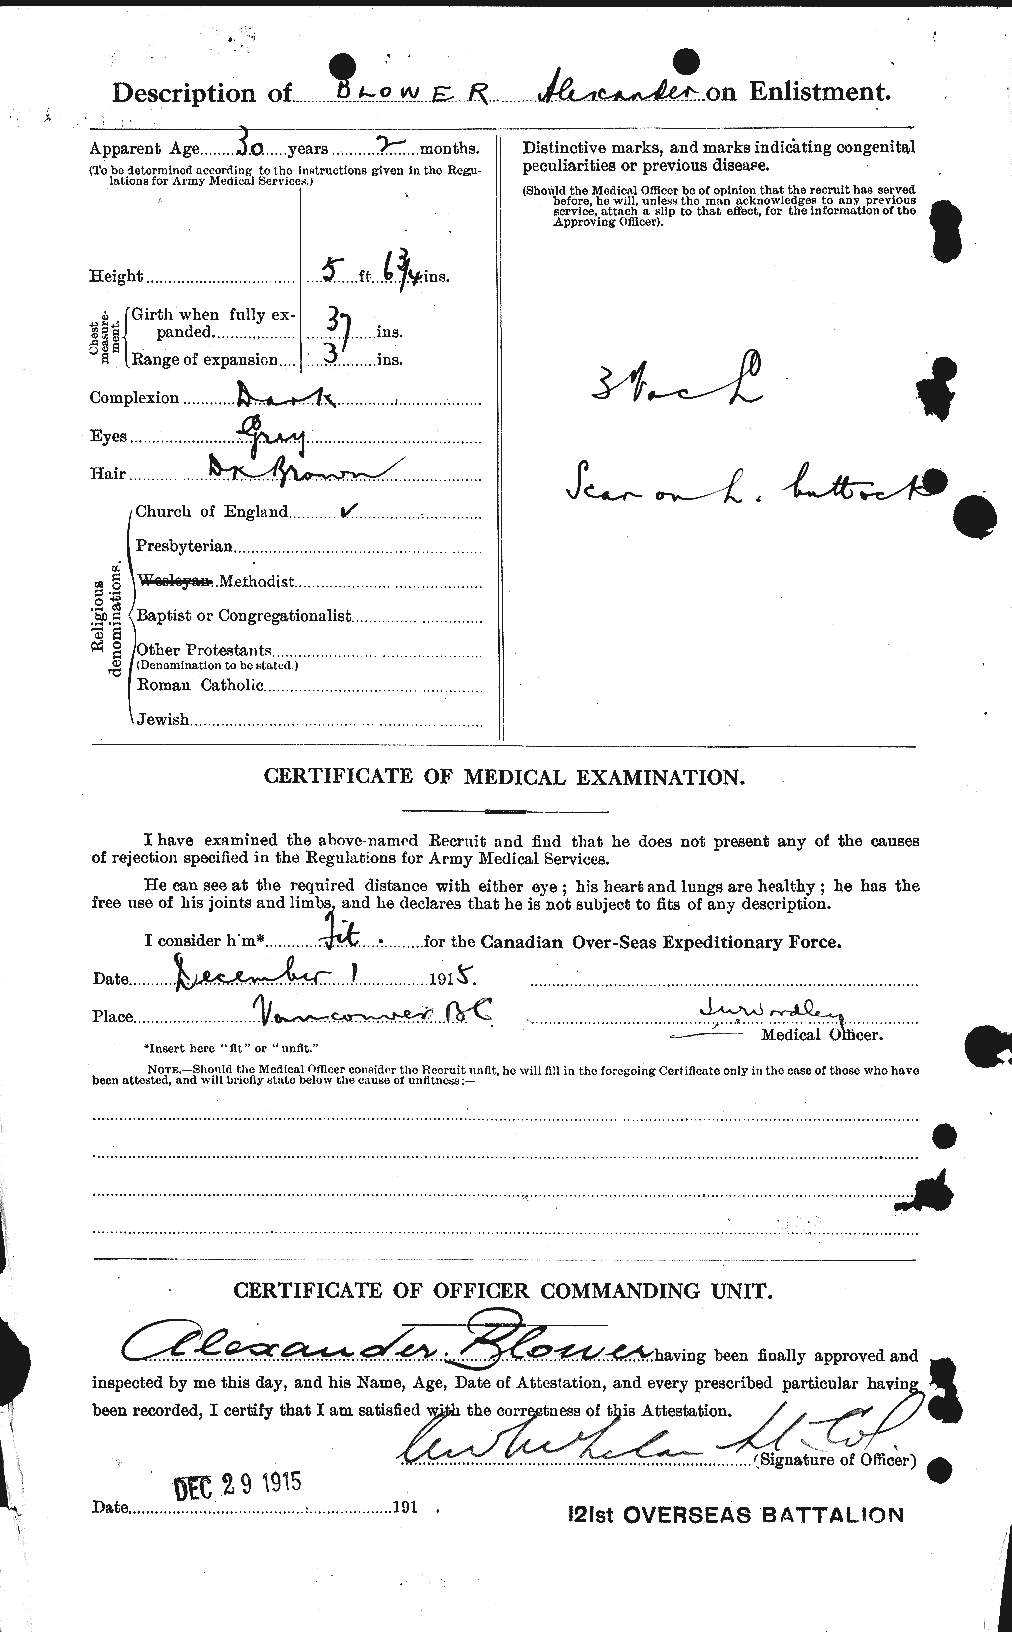 Dossiers du Personnel de la Première Guerre mondiale - CEC 247431b